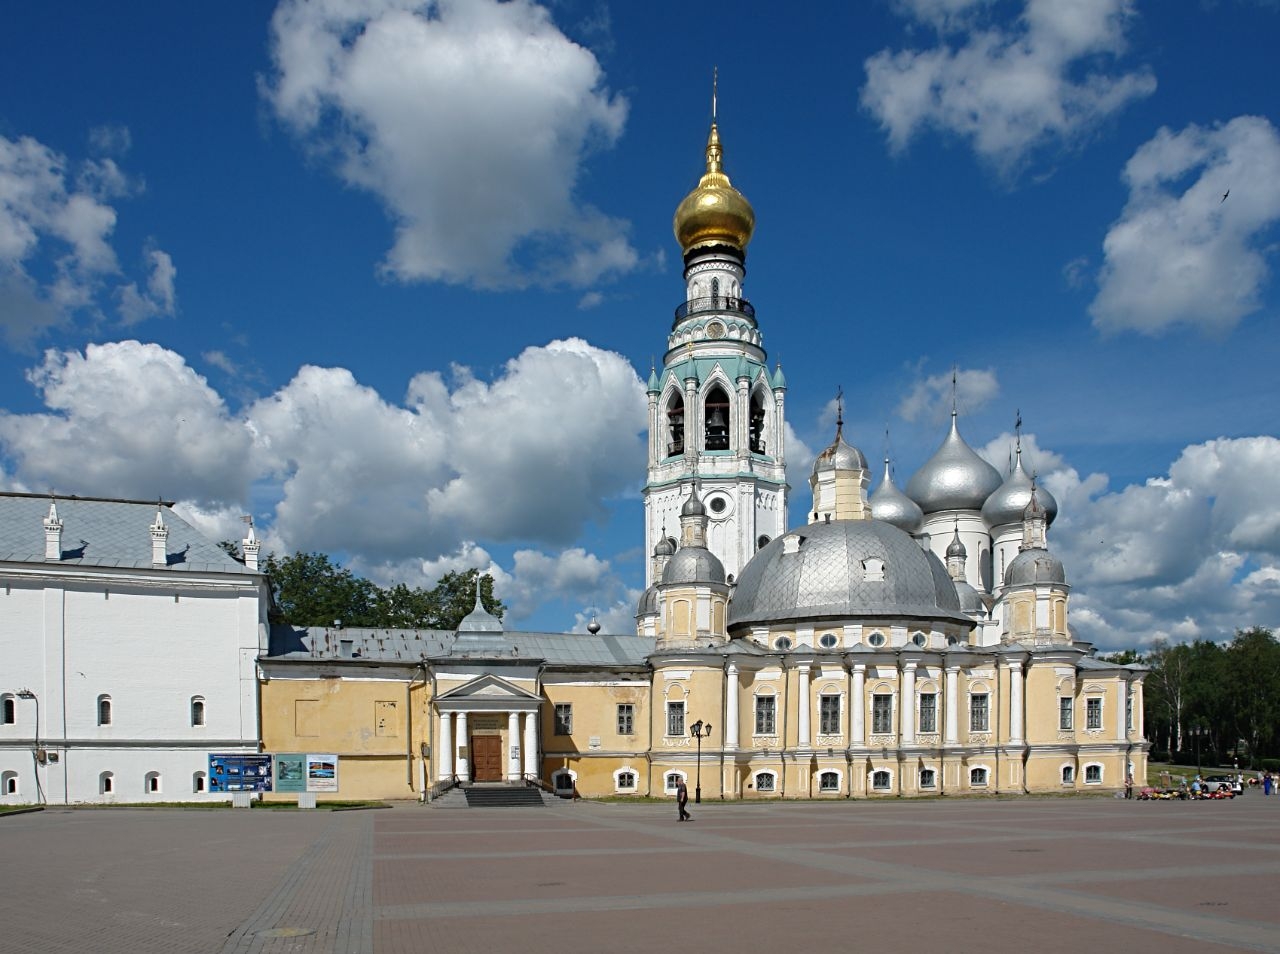 Воскресенский собор Вологда, Россия